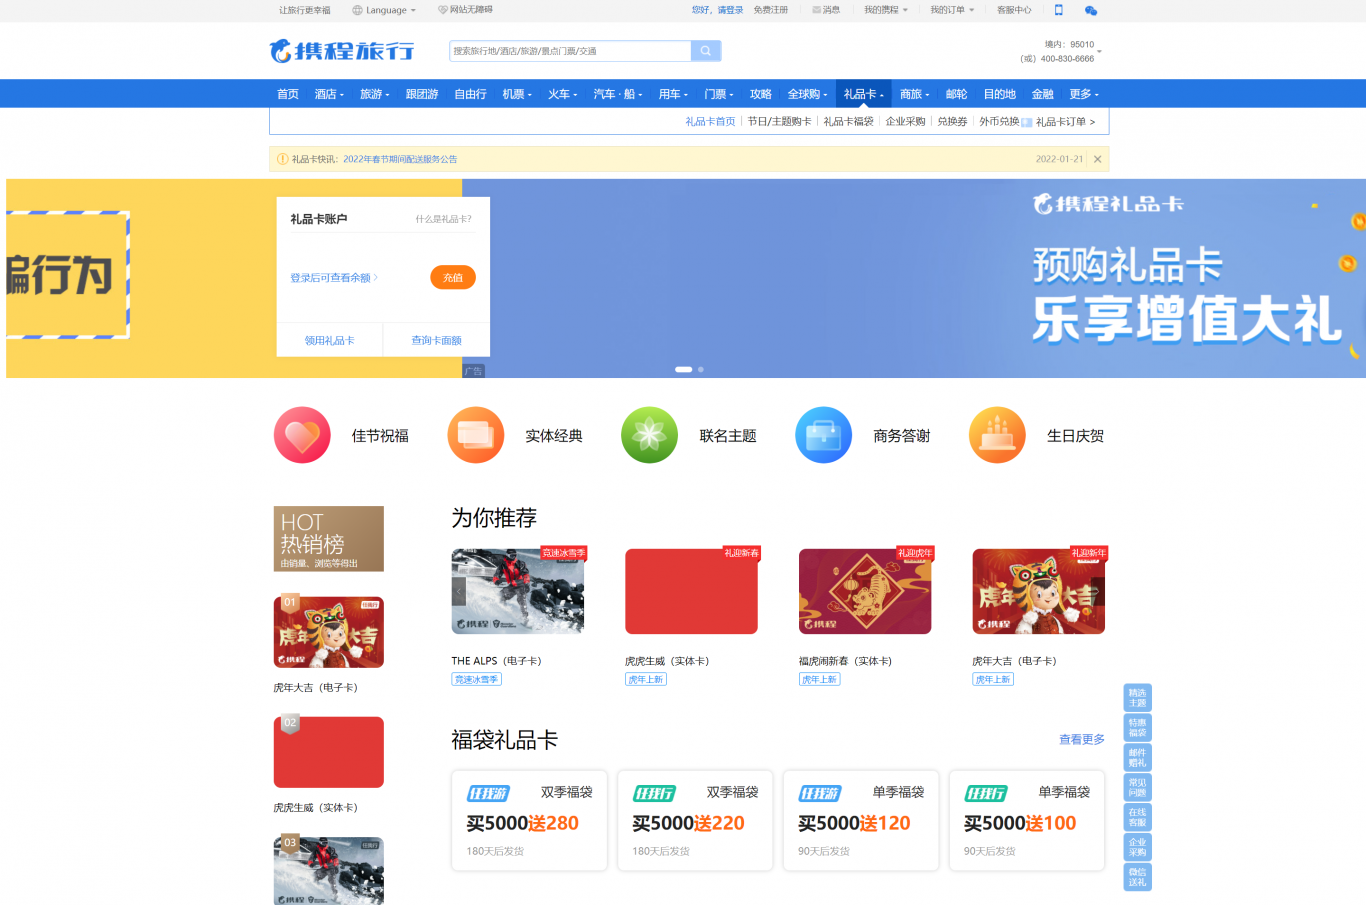 上海携程旅行网-礼品卡